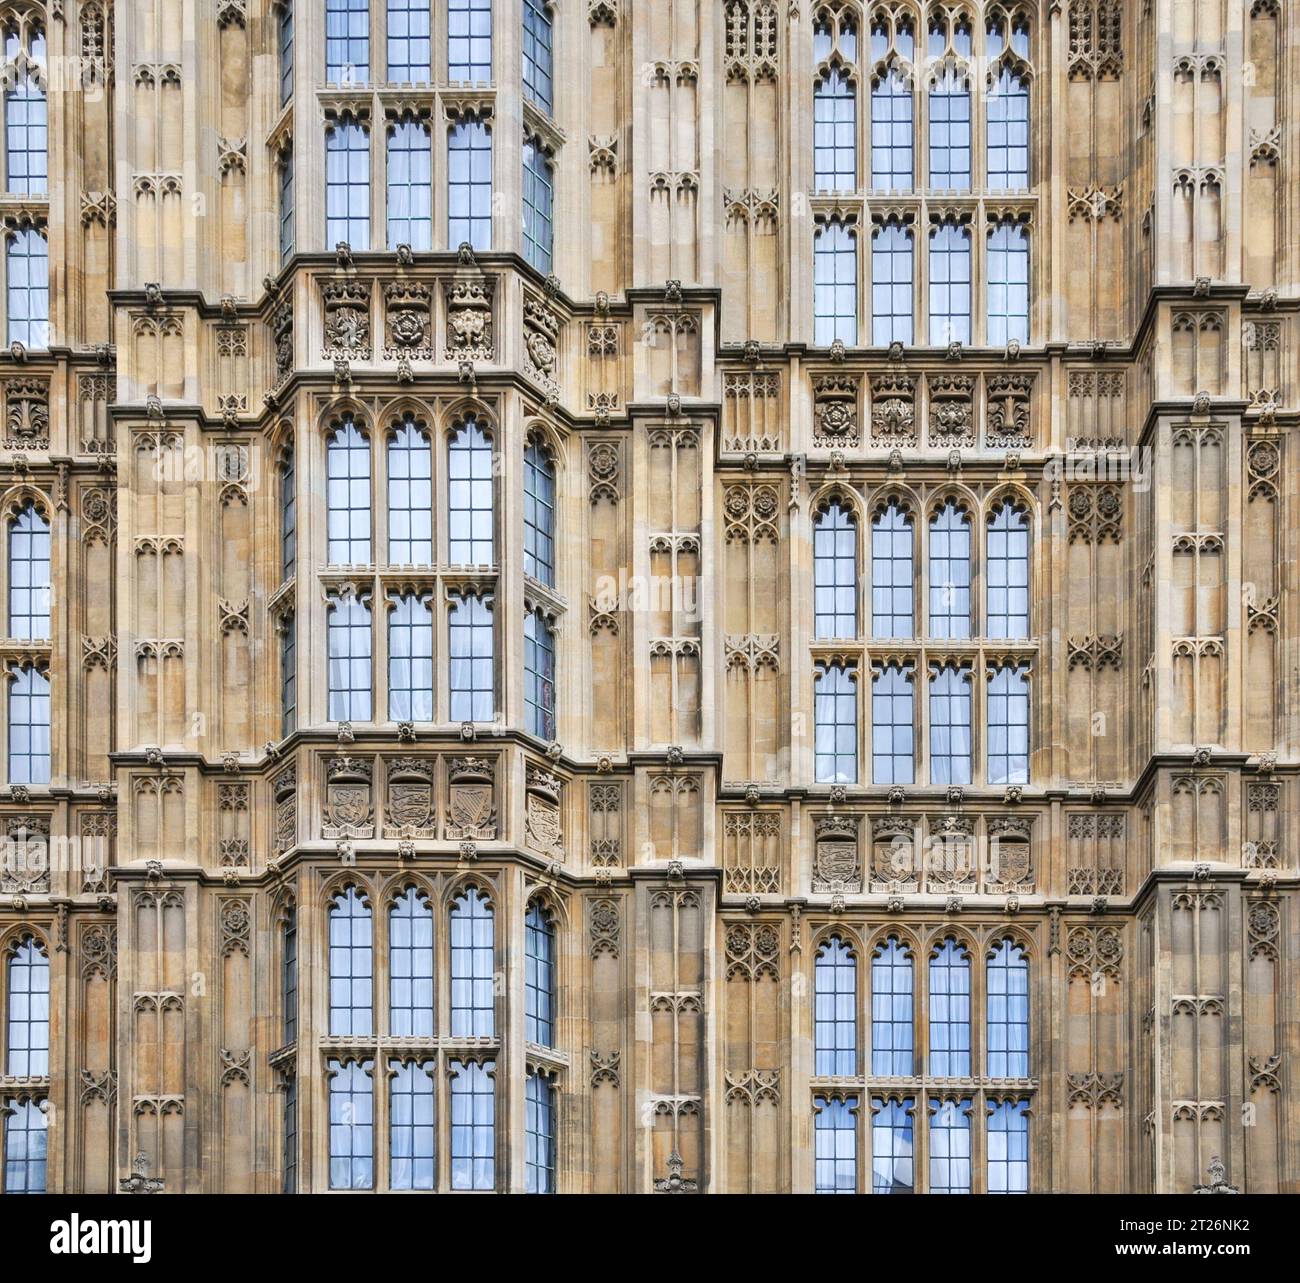 London, UK - 5. Juli 2008: 2008: In London stehen die Houses of Parliament mit ihrem Externen als ein typisches Beispiel britischer gotischer Architektur Stockfoto